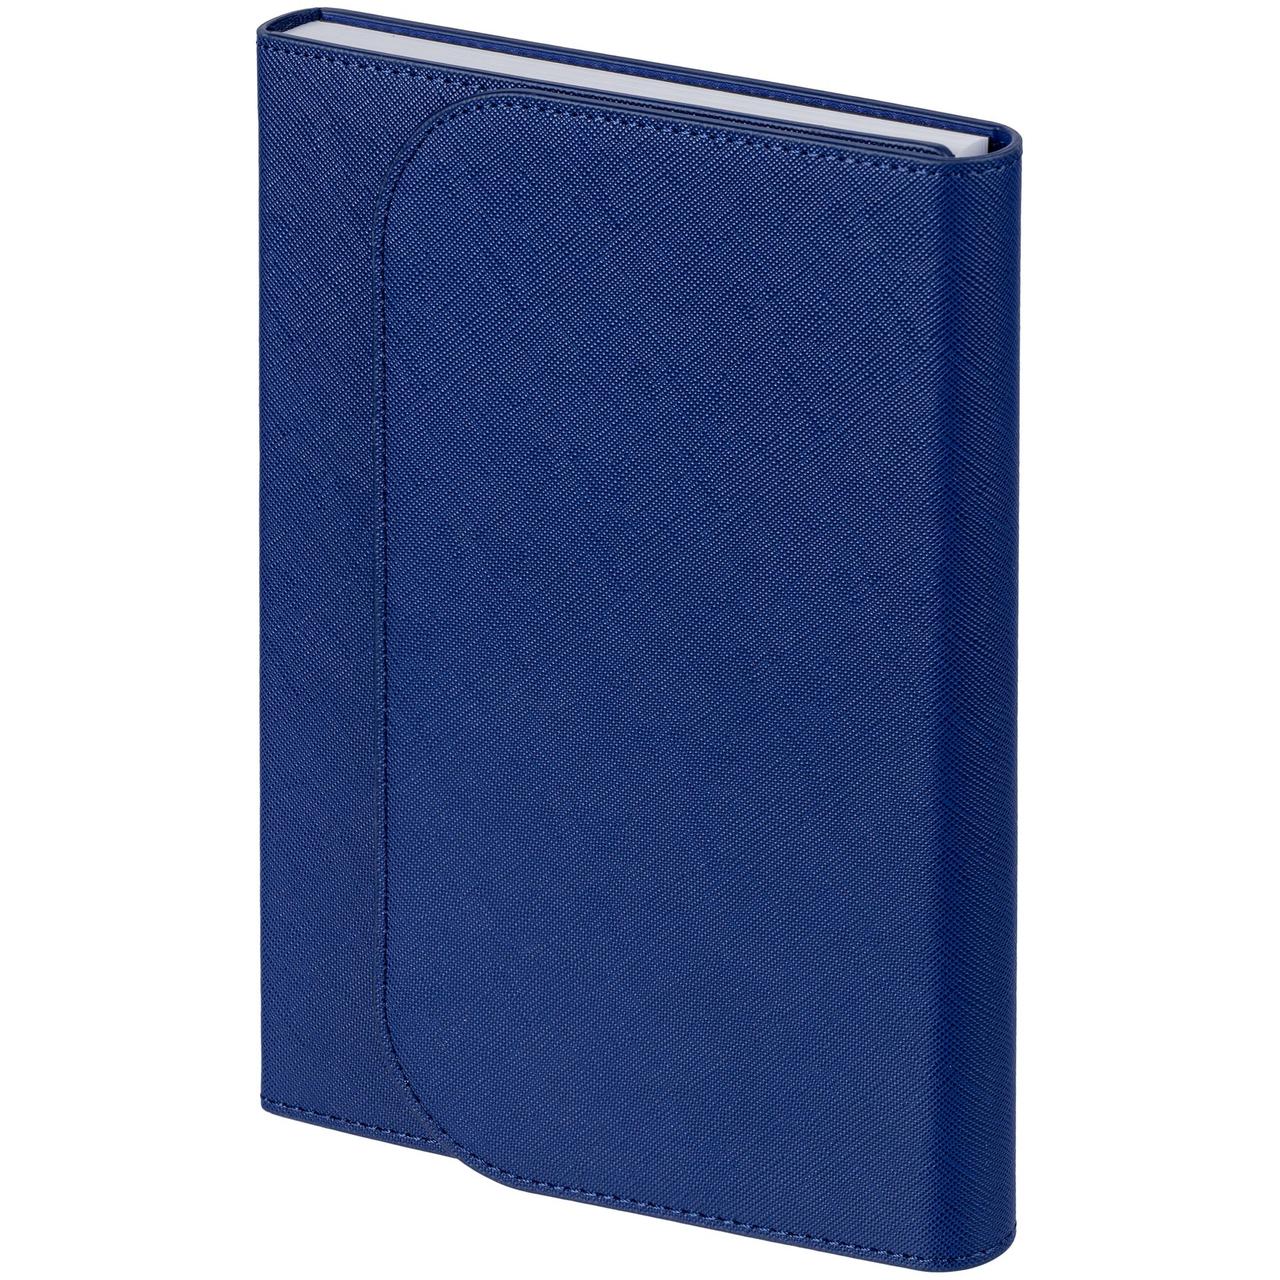 Ежедневник Clappy, недатированный, синий (артикул 15890.40), фото 1